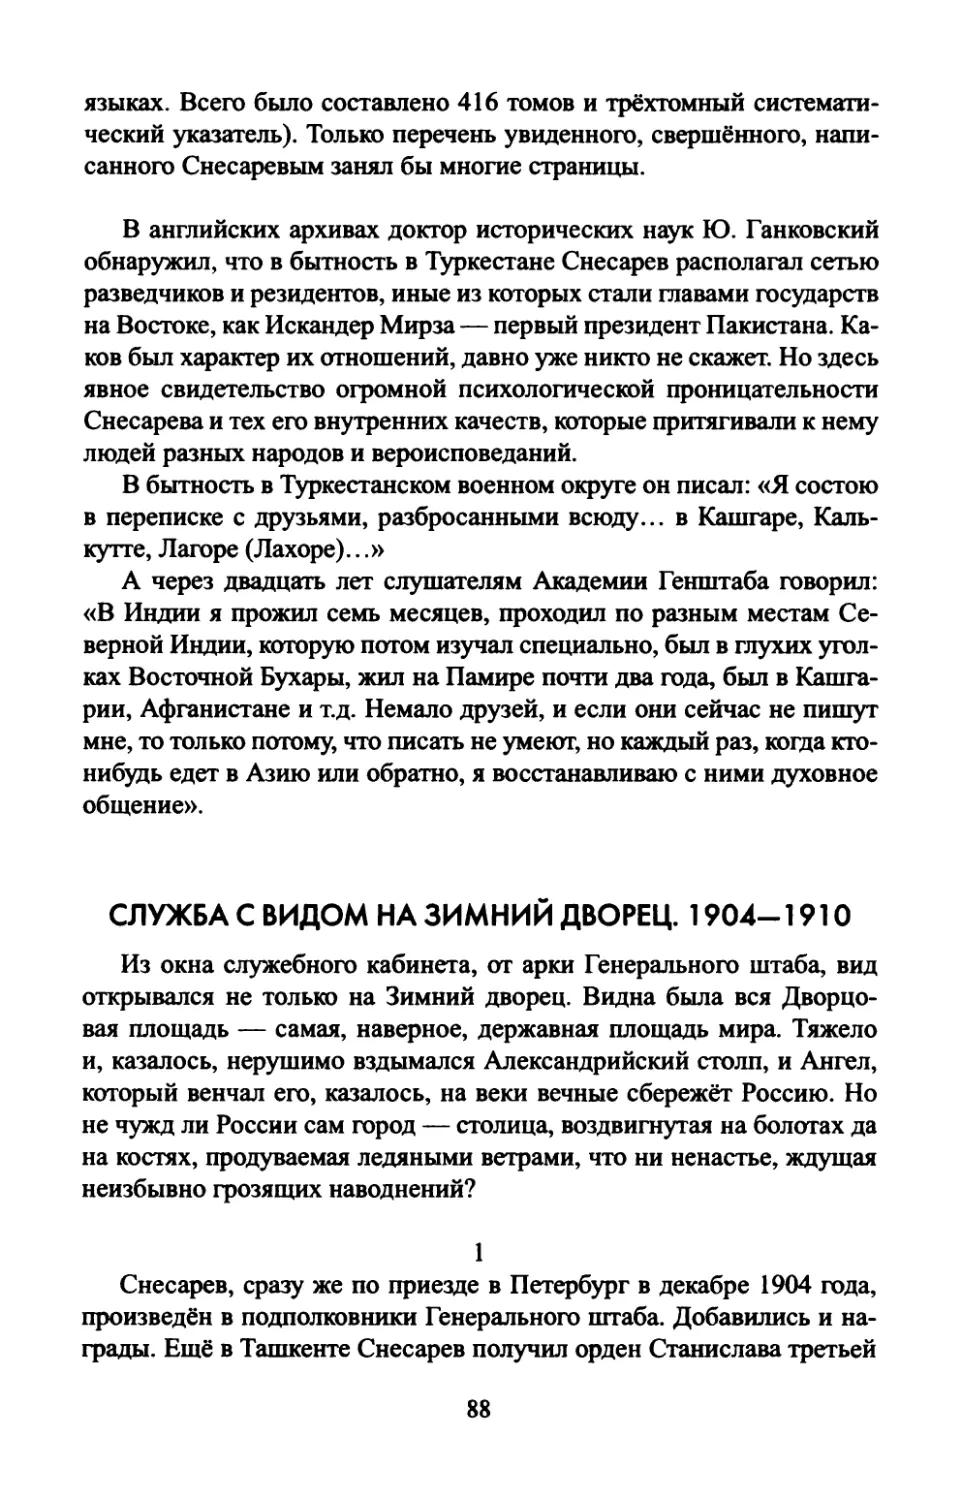 СЛУЖБА  С  ВИДОМ  НА  ЗИМНИЙ  ДВОРЕЦ.  1904—1910